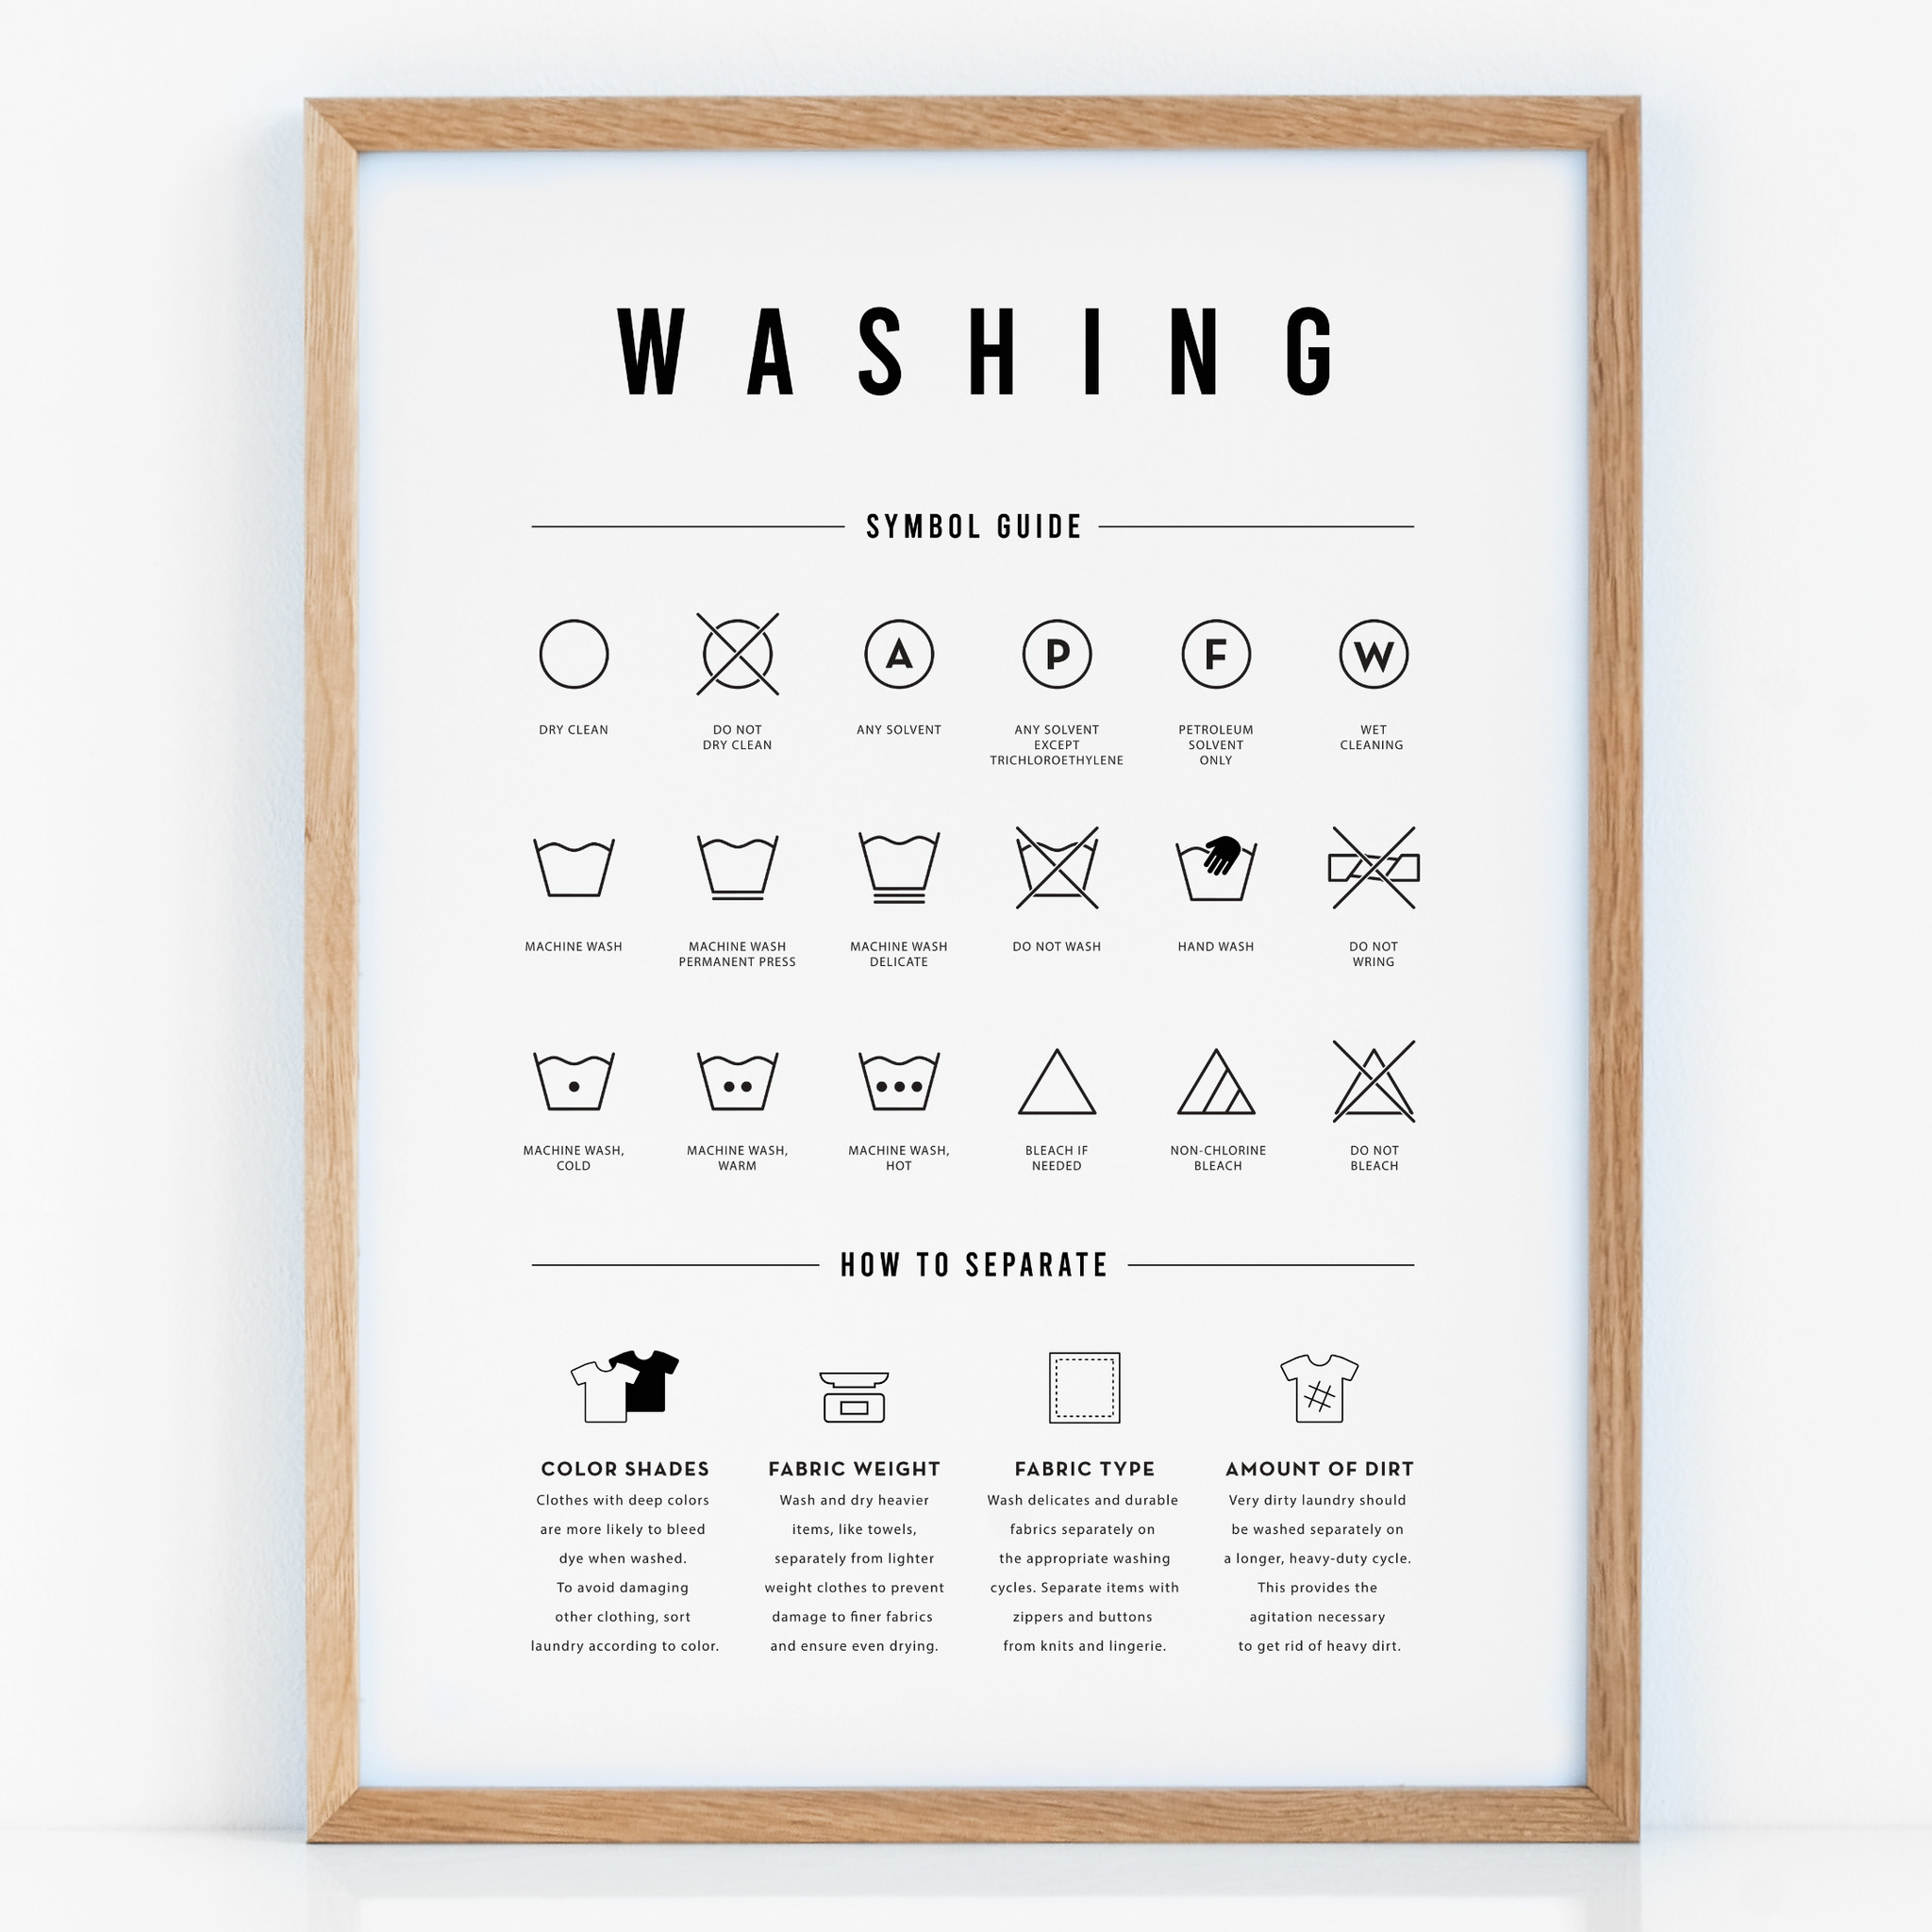 Grafika z symbolami to idealny dodatek do pralni /suszarni.